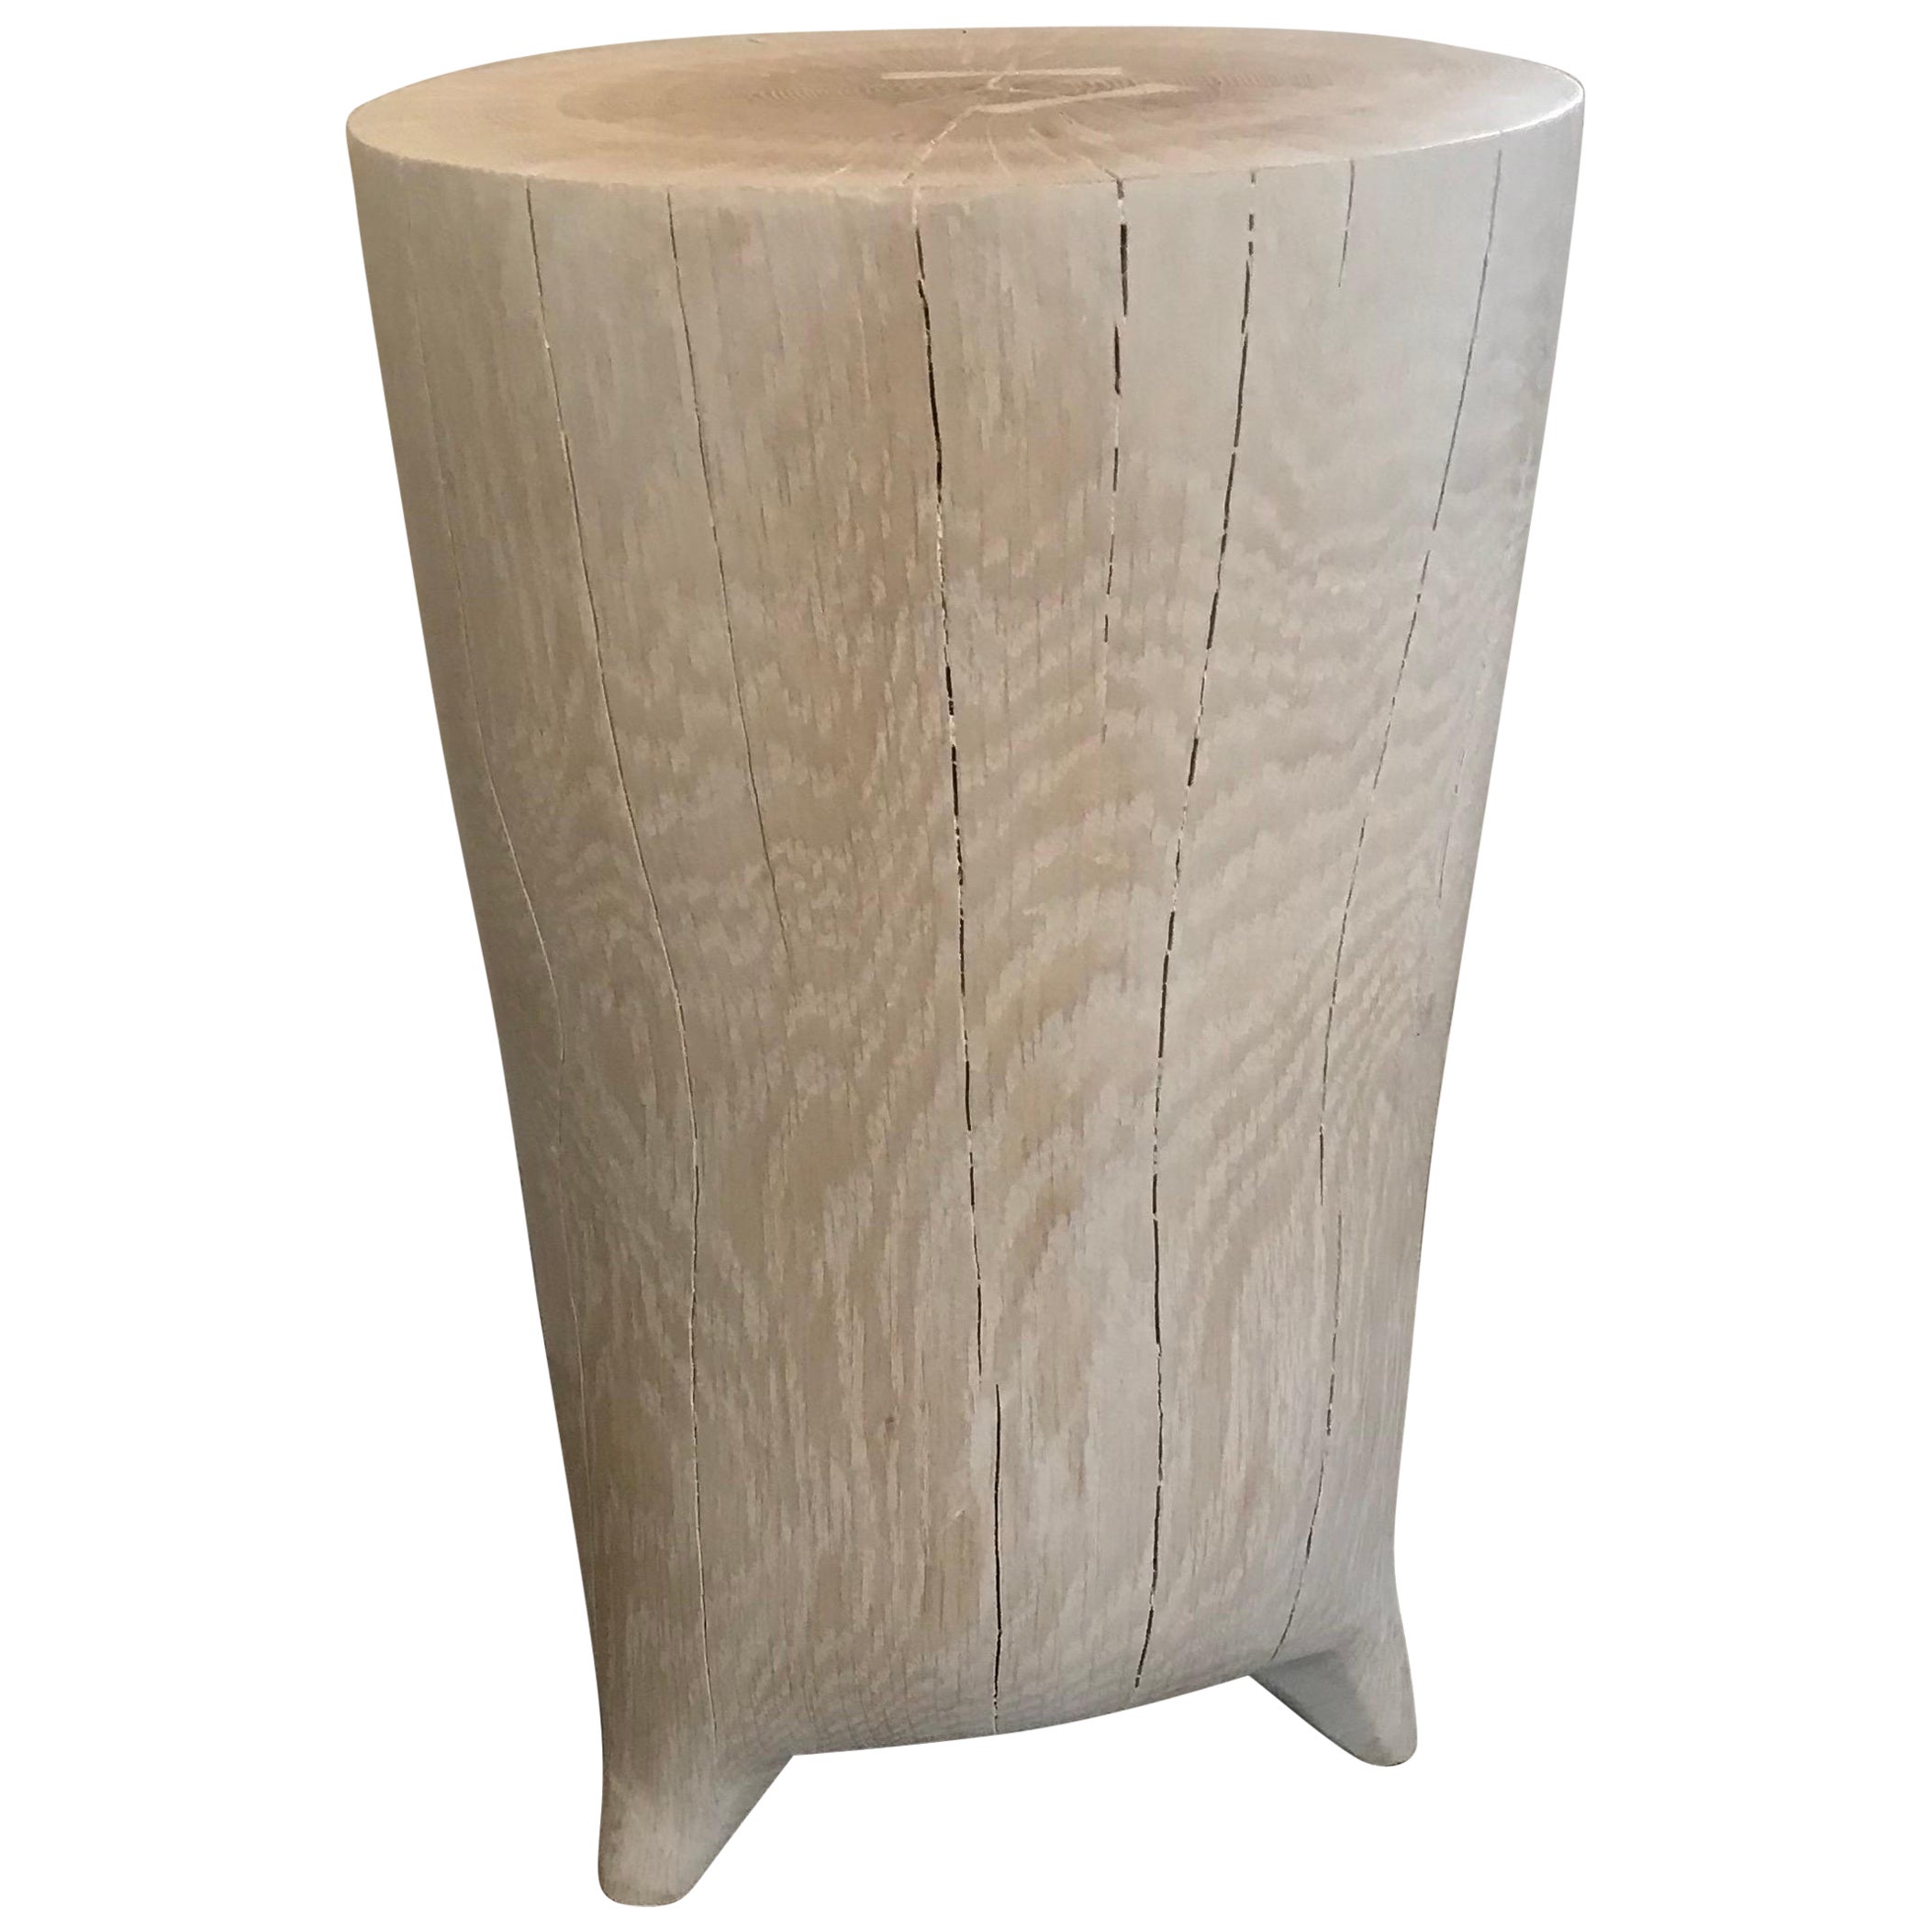 Table d'appoint allongée en bois blanchi sculptée à la main du 21e siècle sur de minuscules pieds